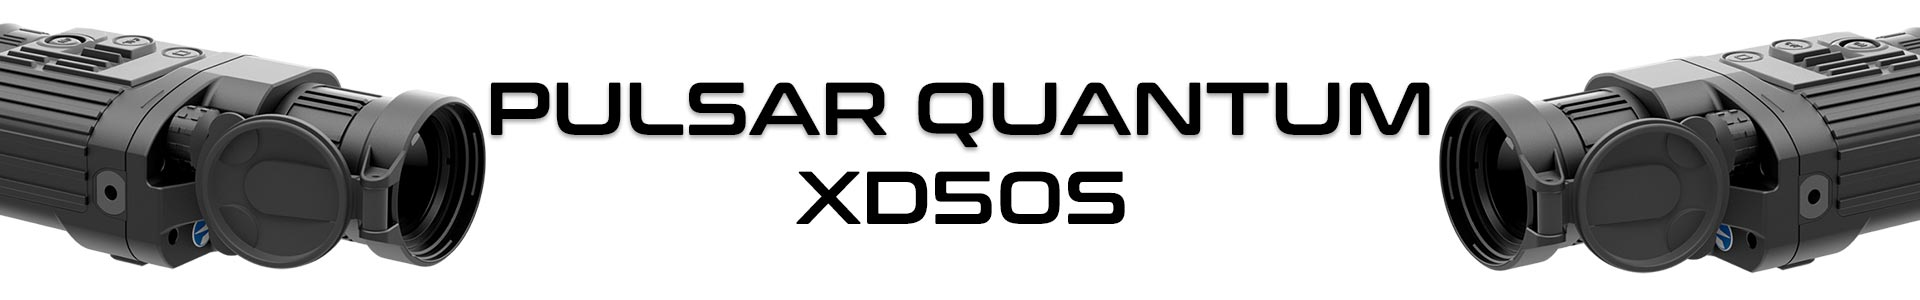 Купить Pulsar Quantum XD50S